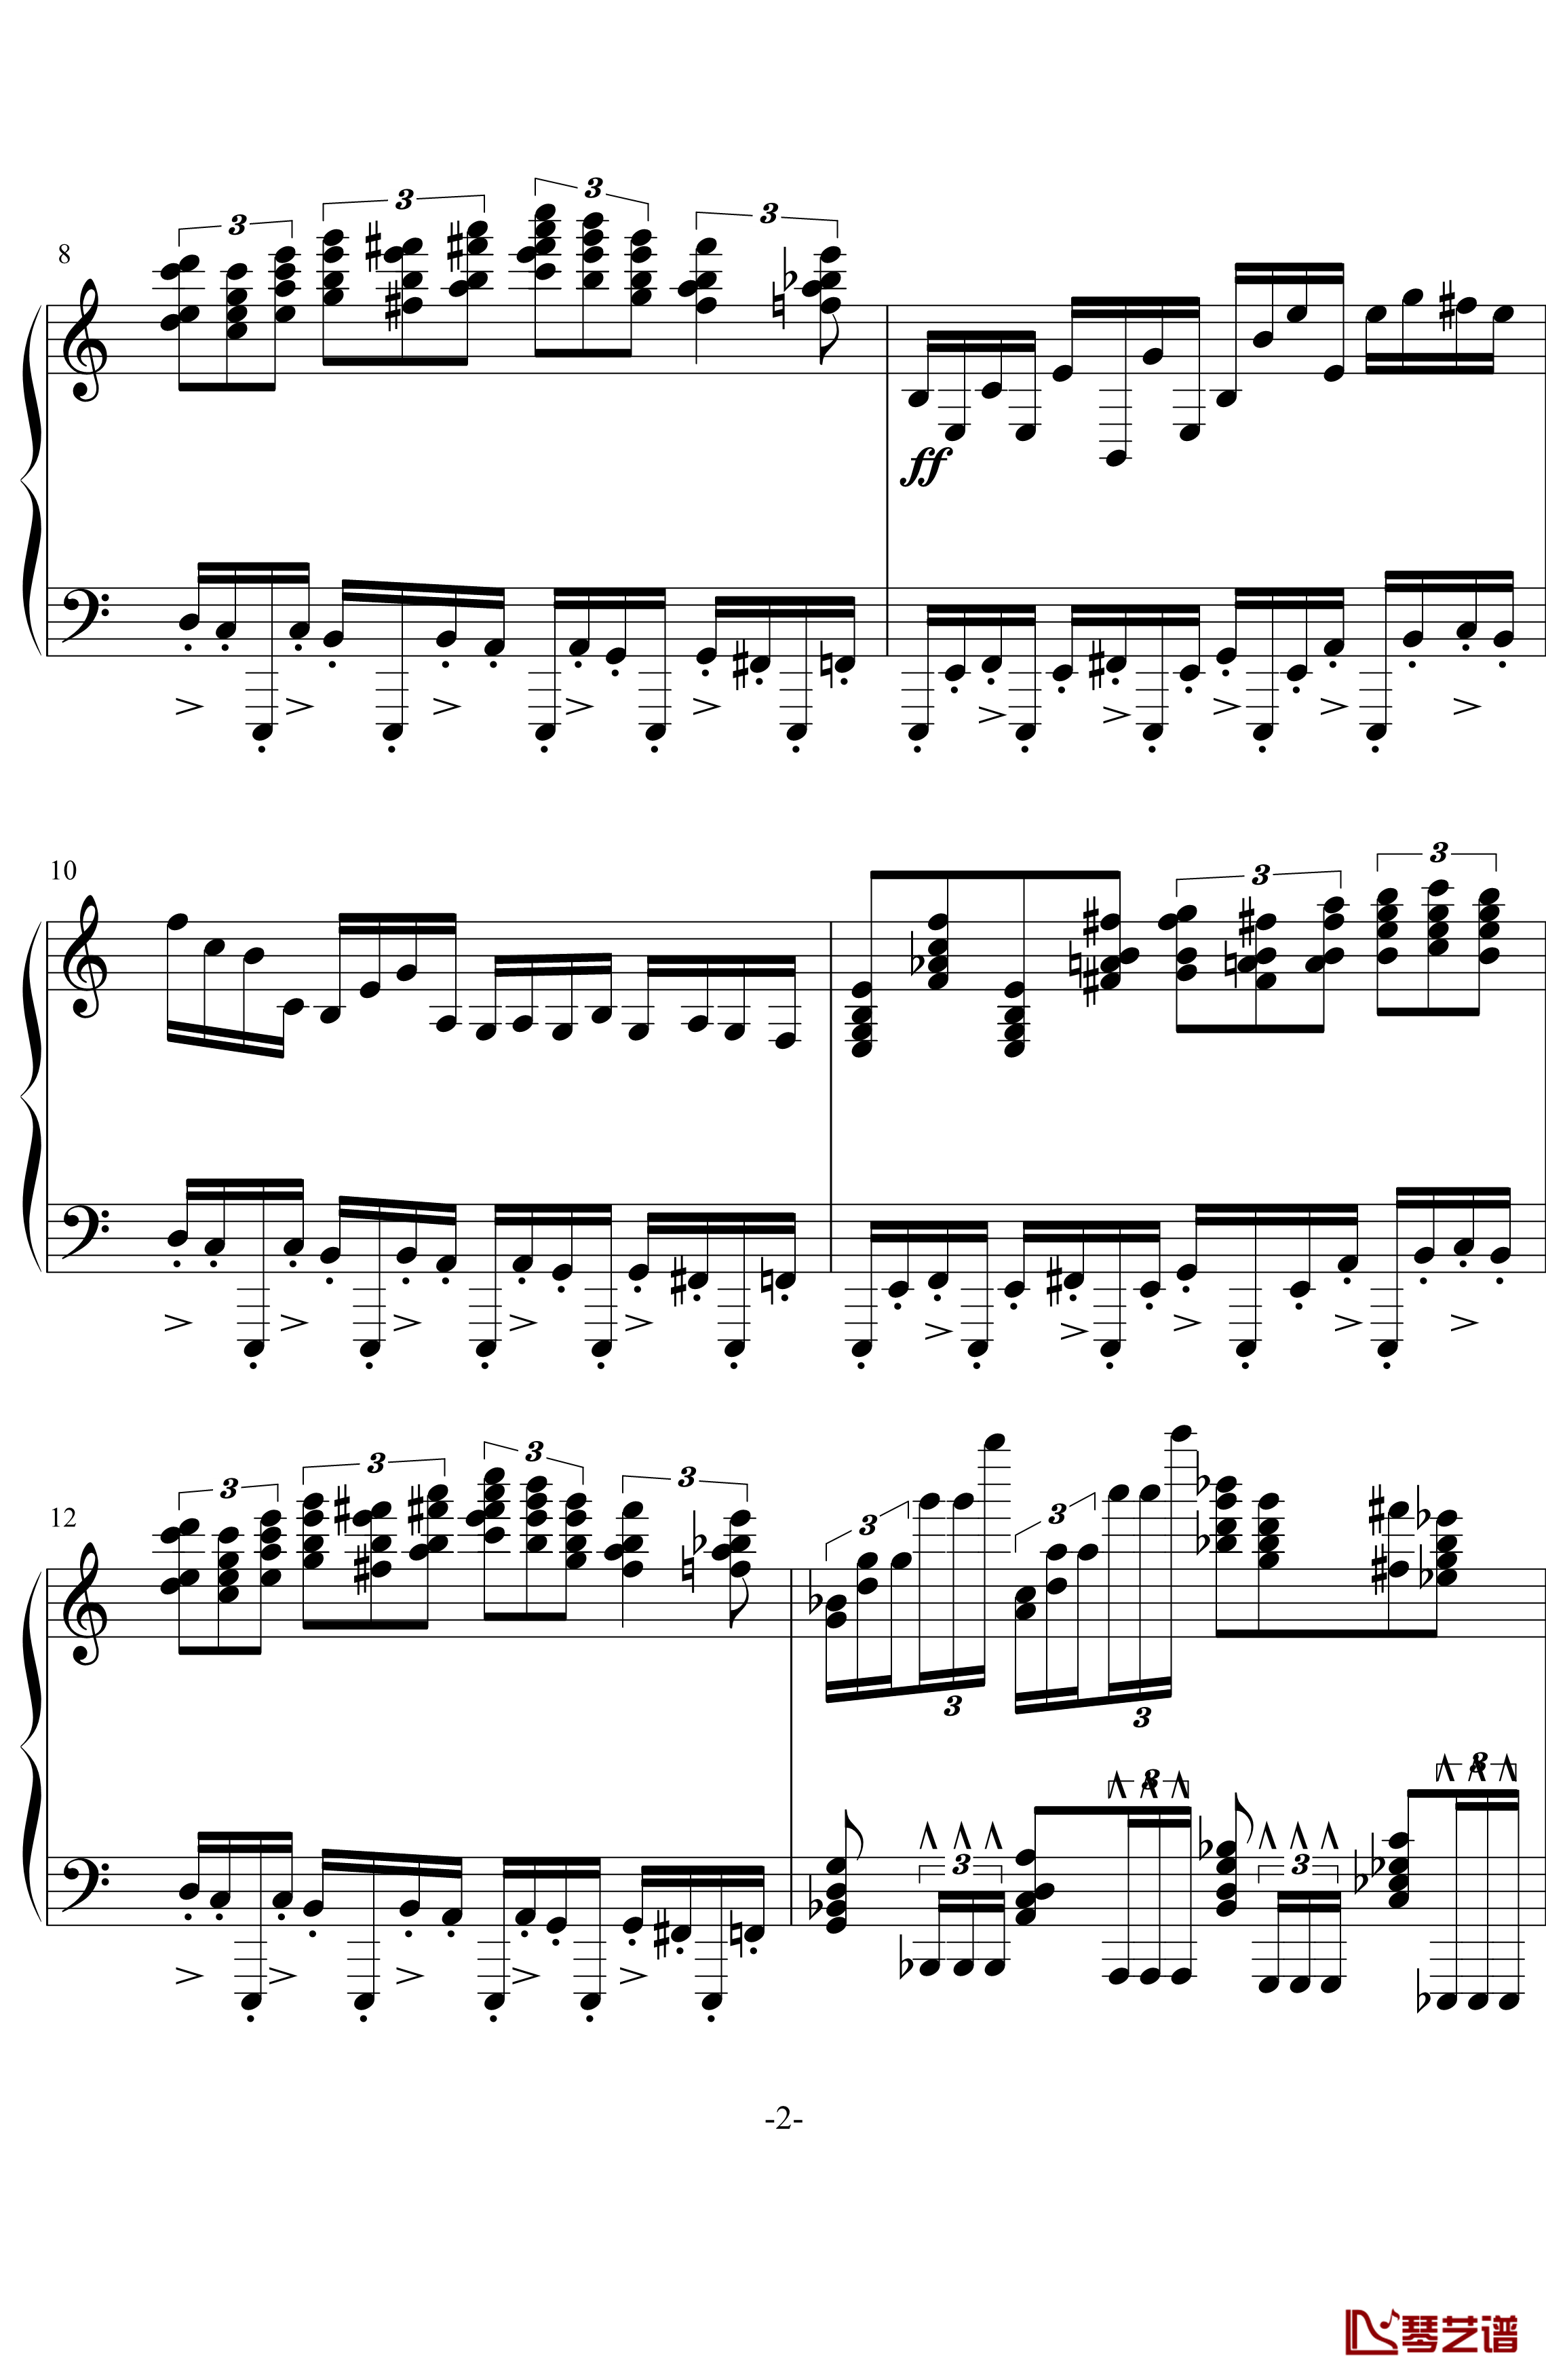 龙卷风钢琴谱-超级练习曲-wang5549034412